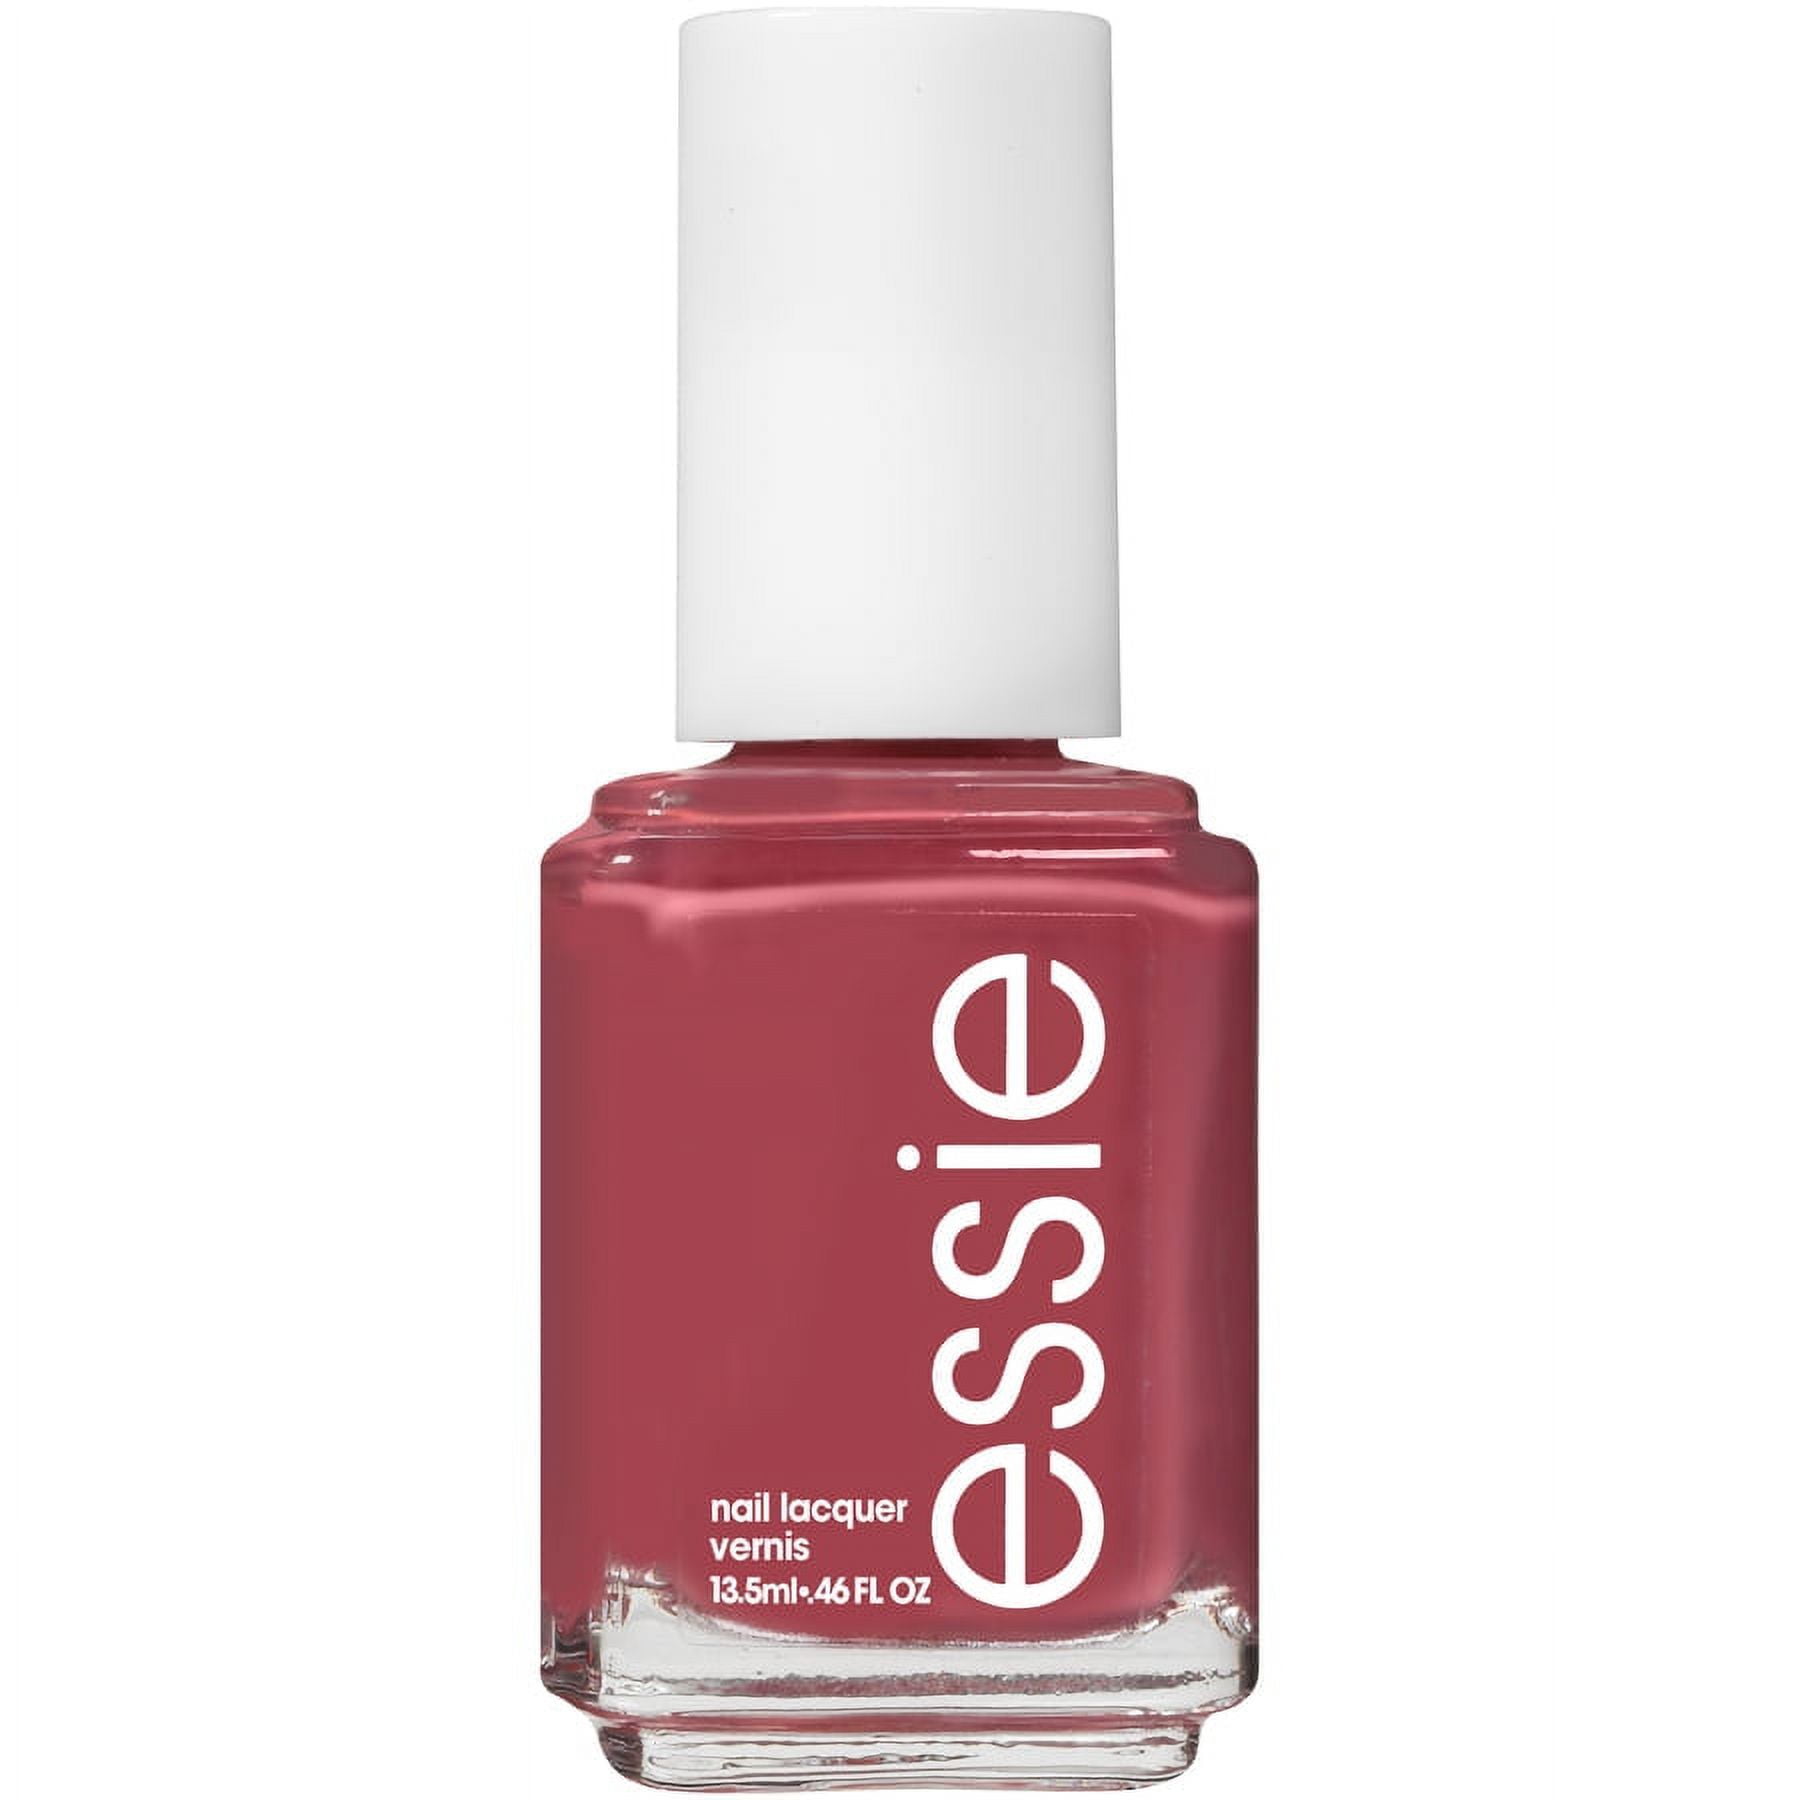 essie Salon Quality 8 Free Vegan Nail Polish, Deep Blush Pink, 0.46 fl oz  Bottle